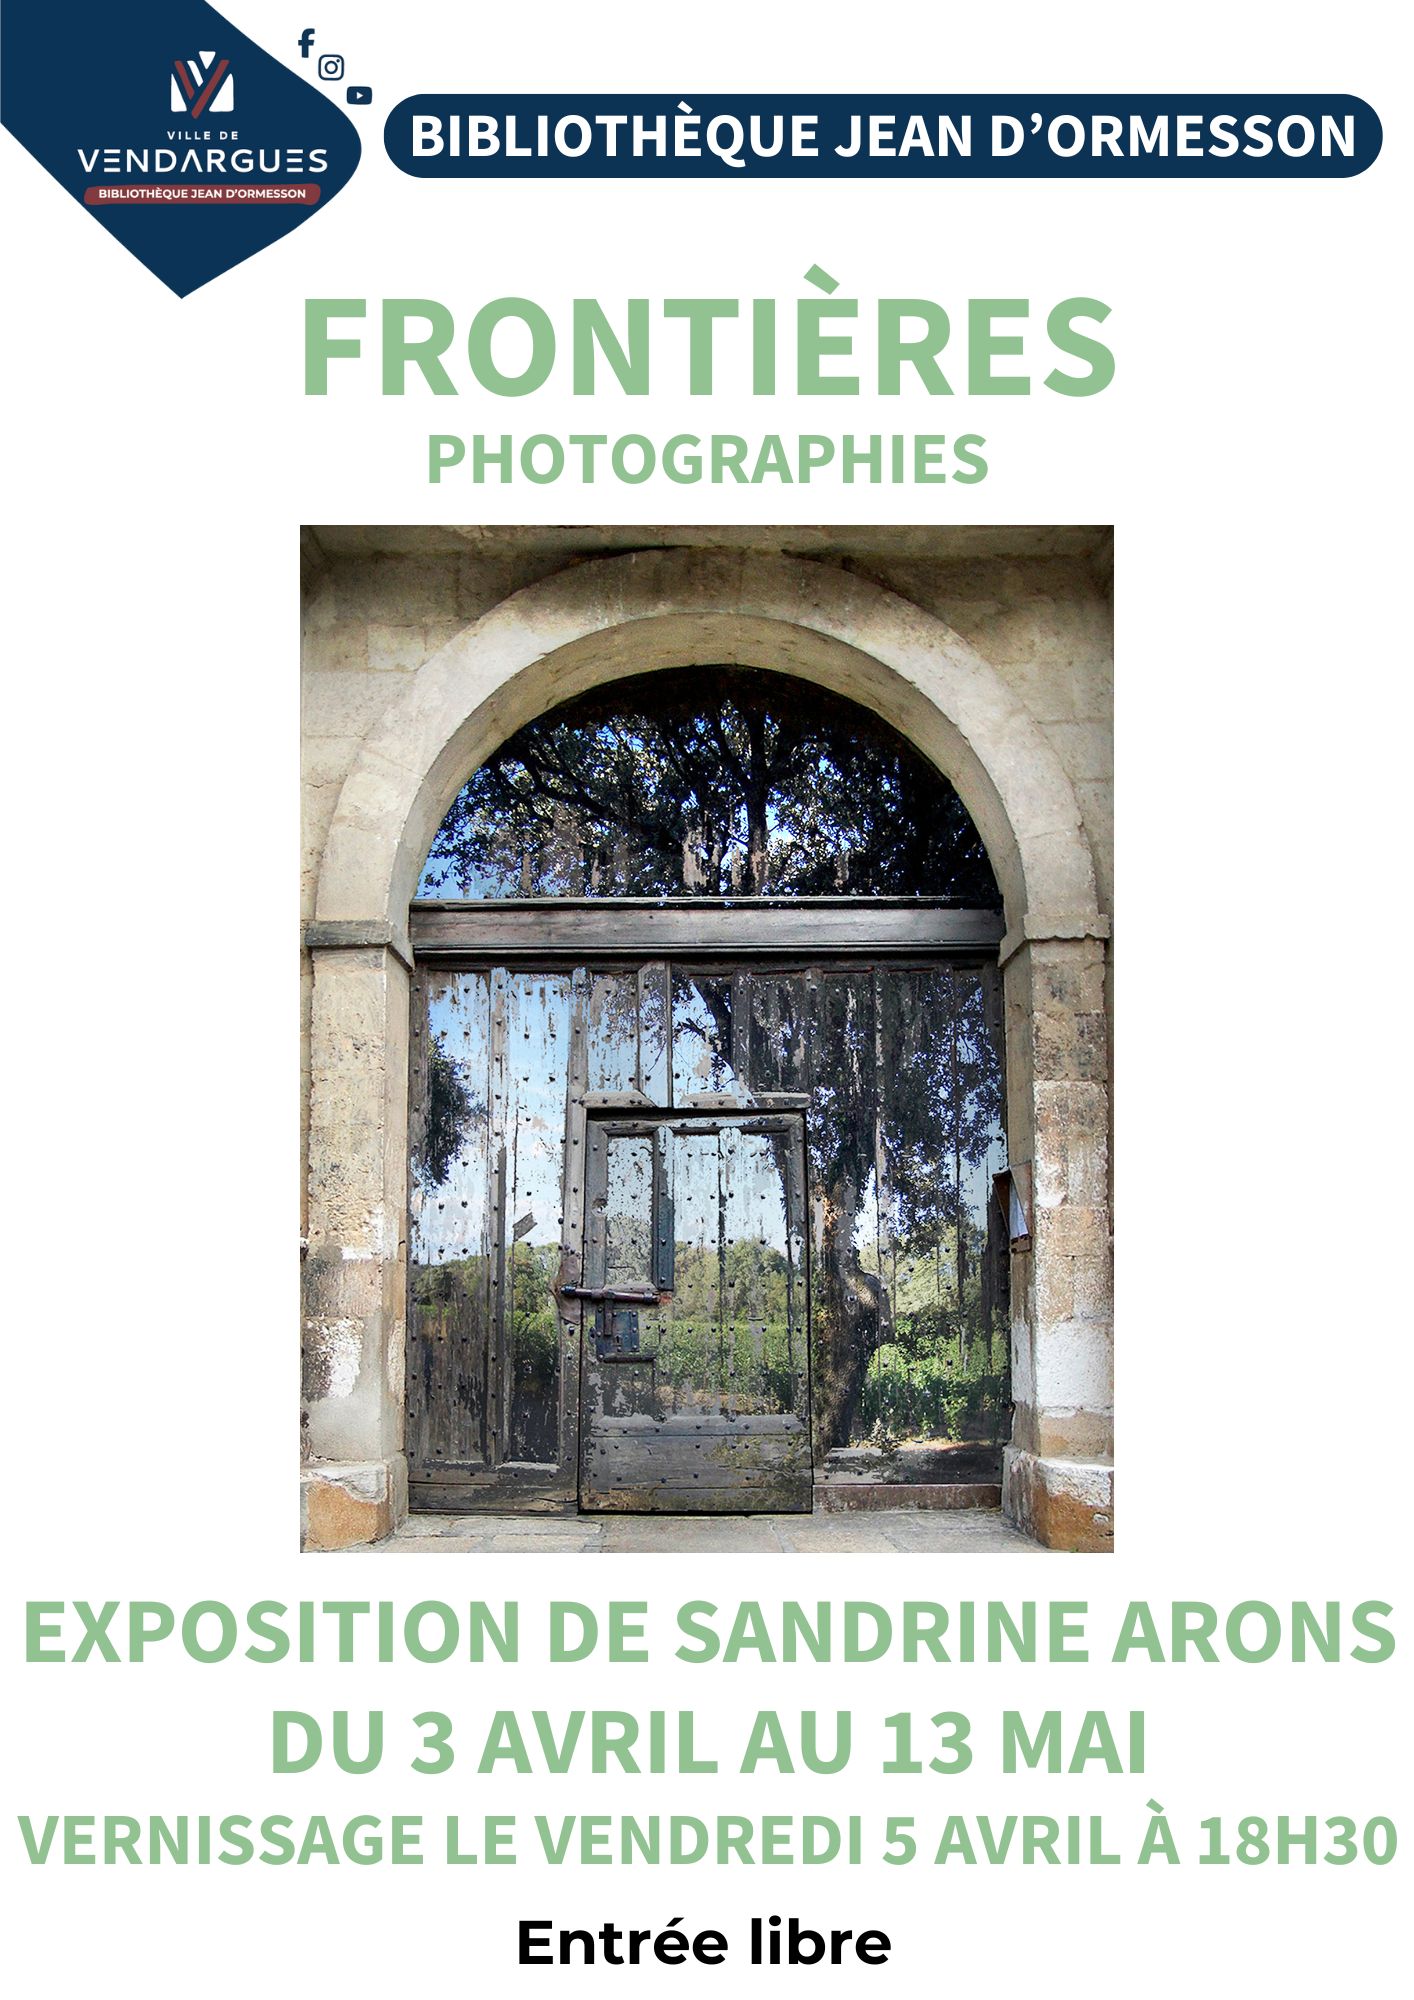 EXPOSITION “FRONTIÈRE” de Sandrine ARONS